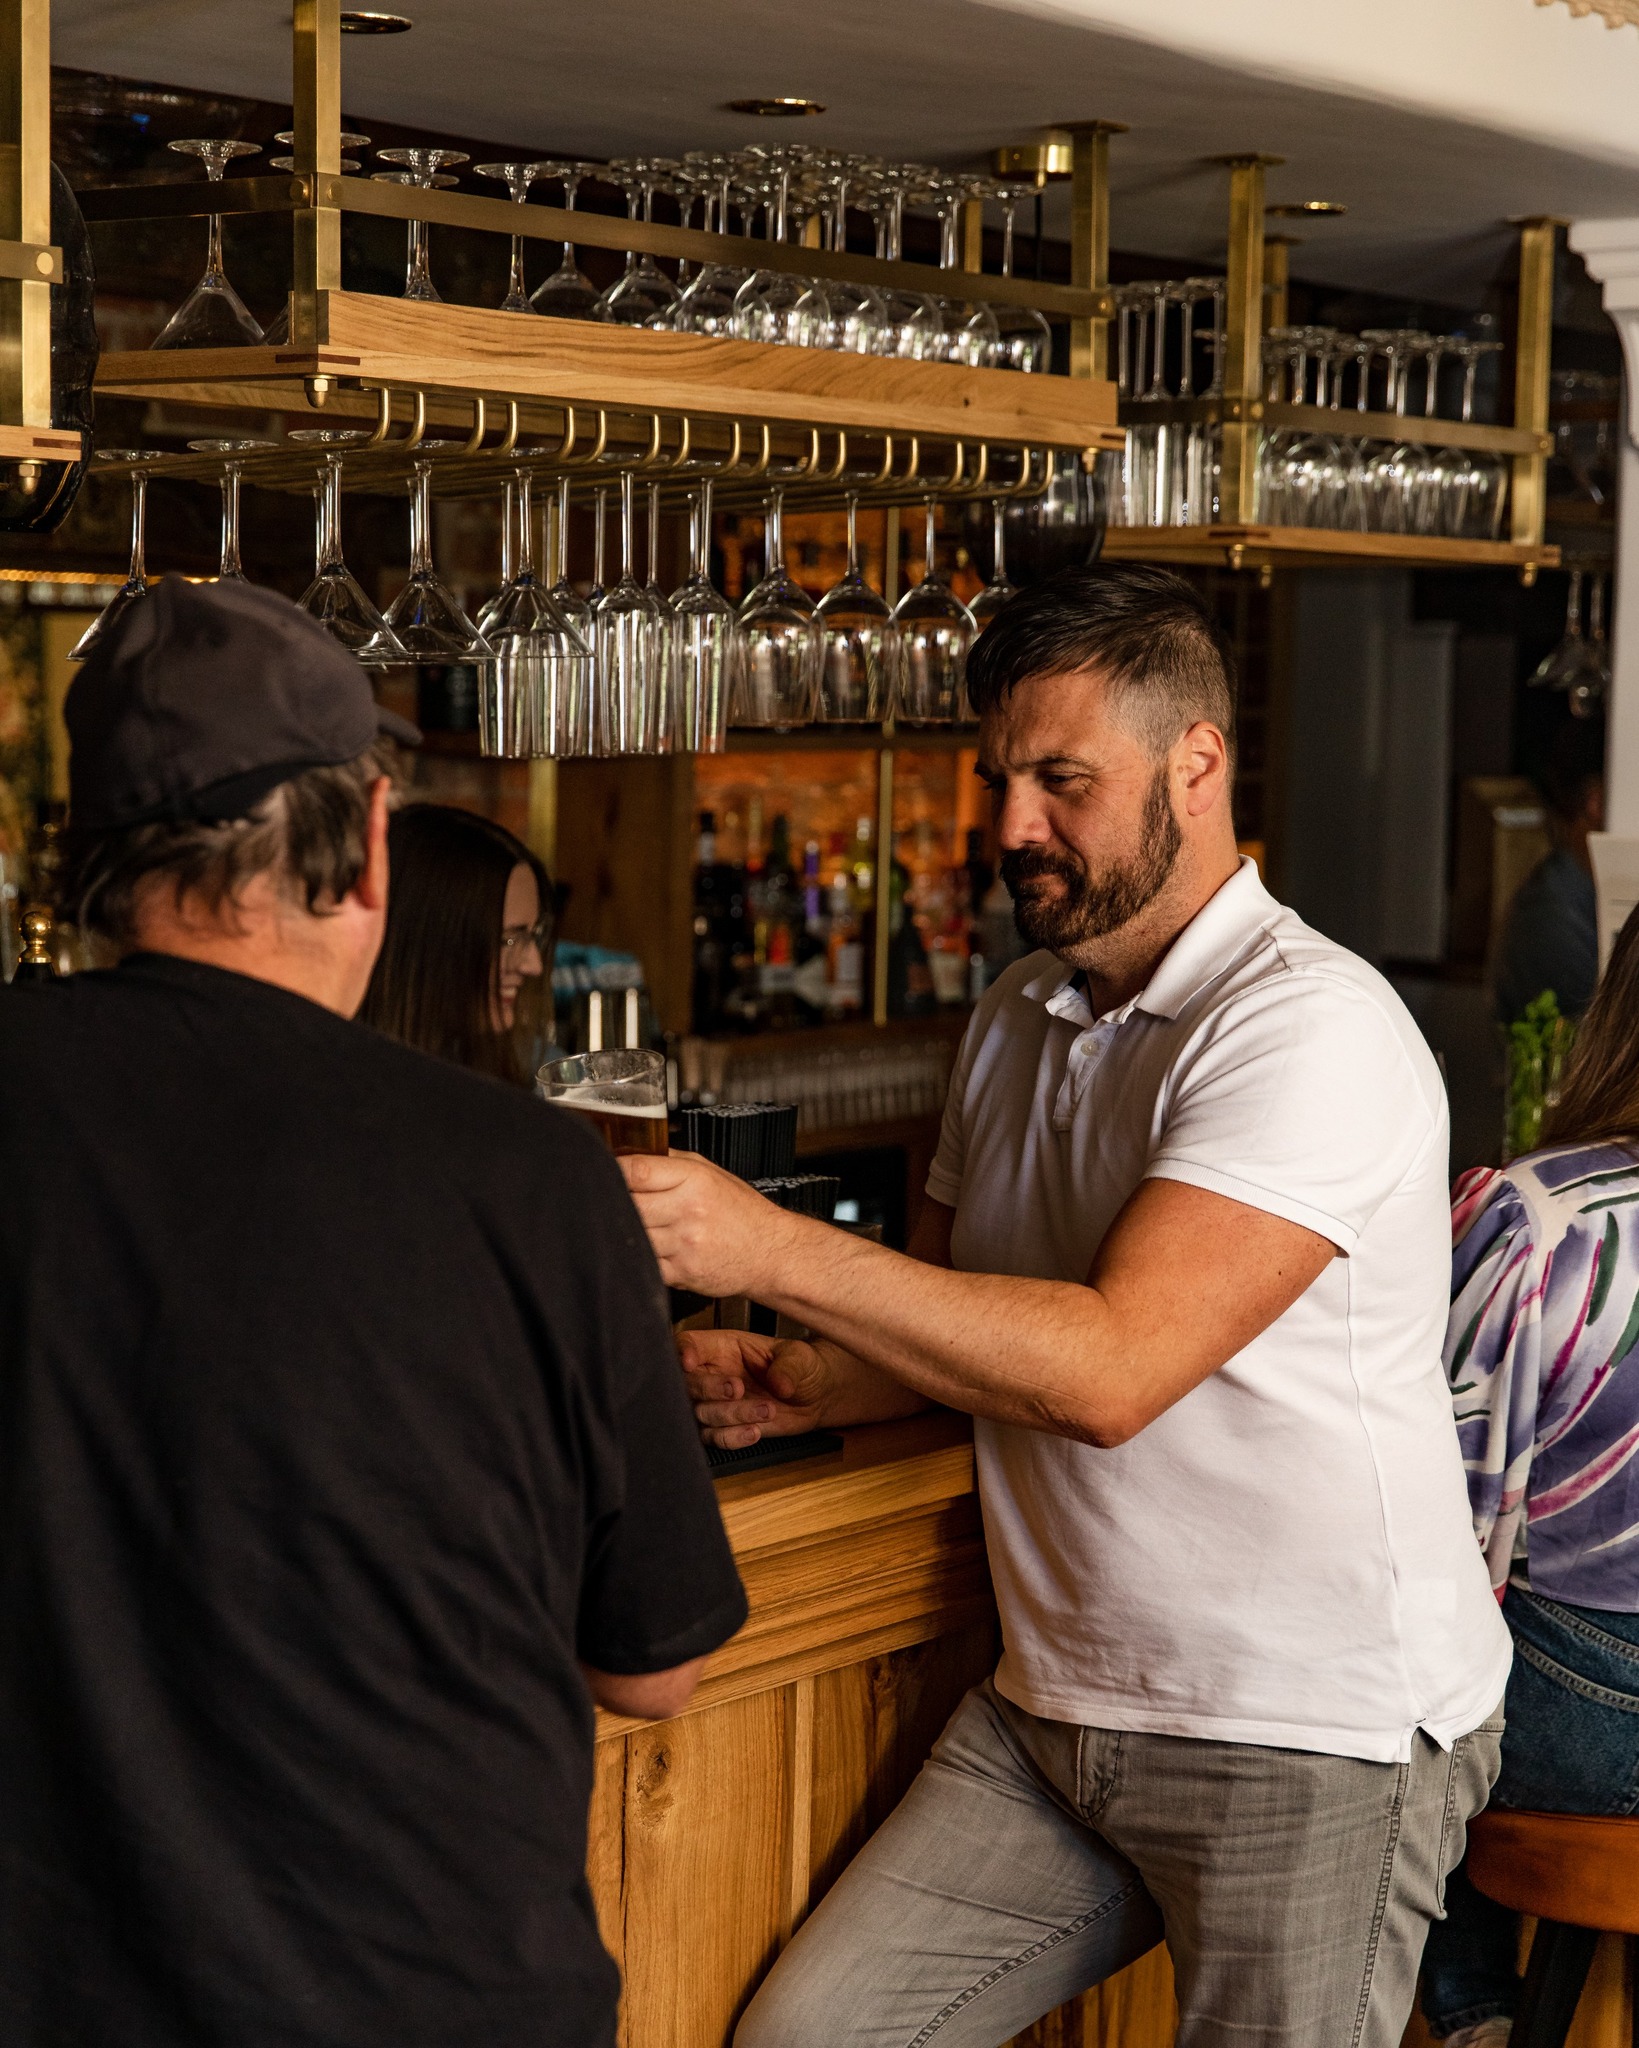 Men drinking at the bar